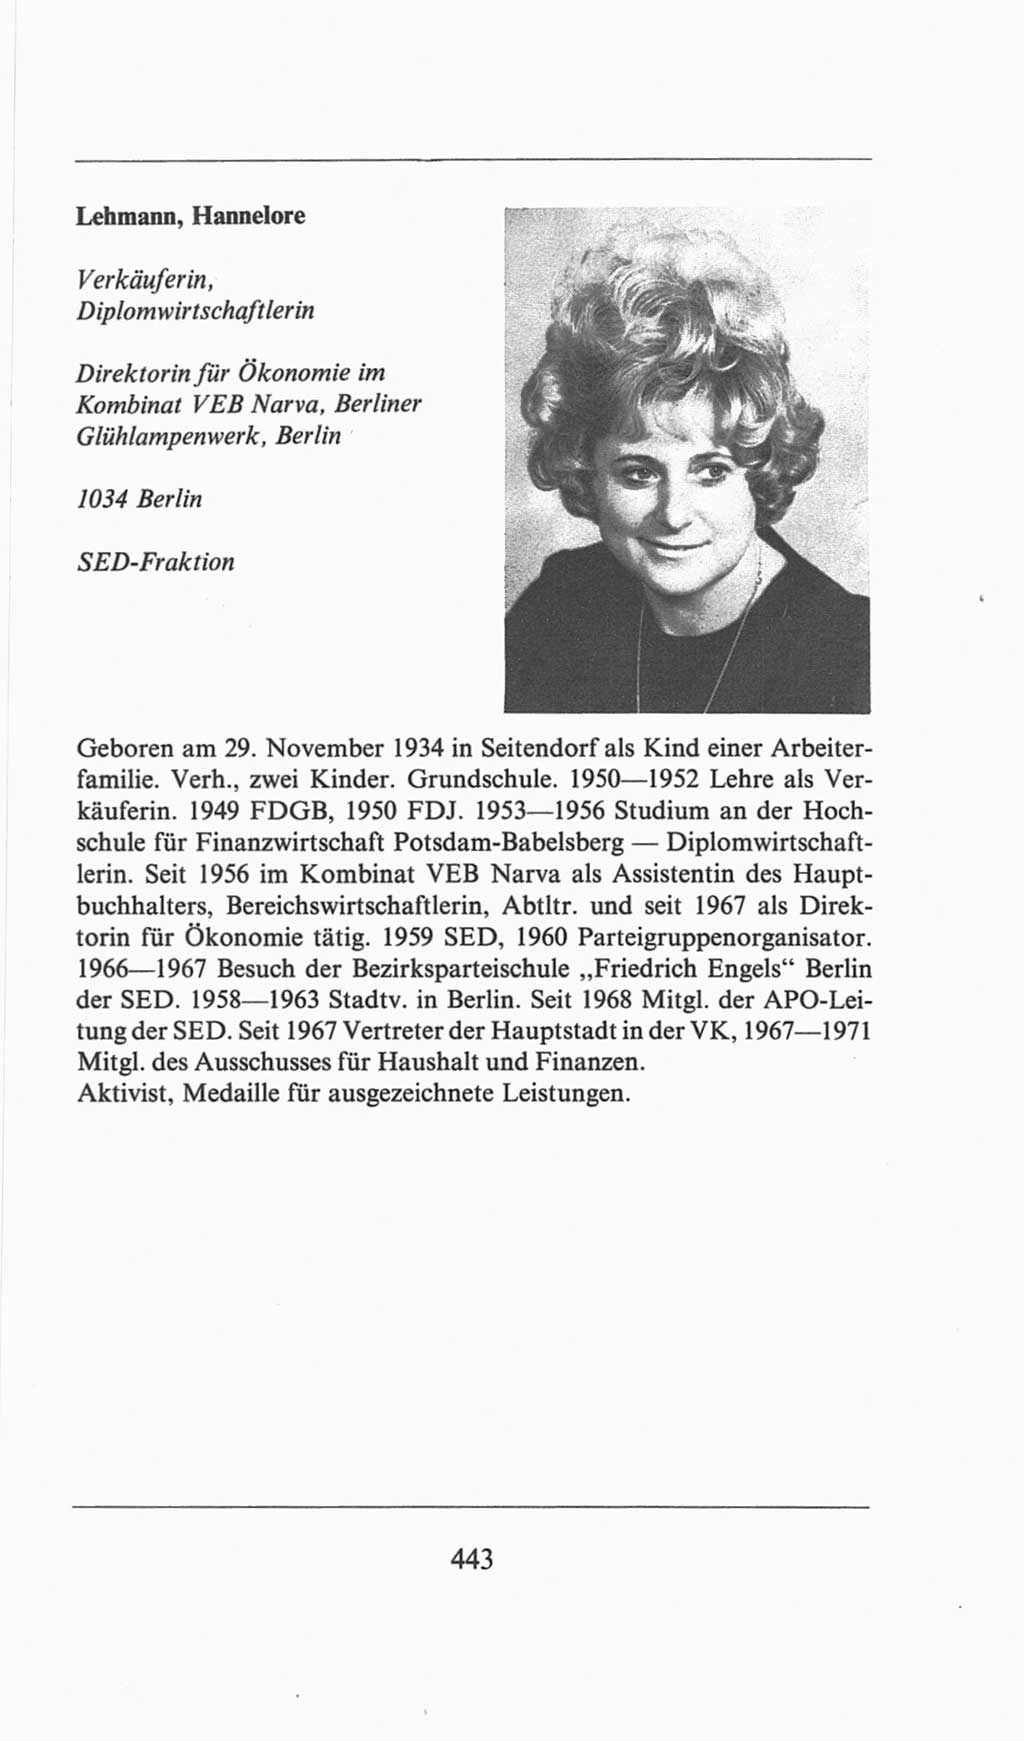 Volkskammer (VK) der Deutschen Demokratischen Republik (DDR), 6. Wahlperiode 1971-1976, Seite 443 (VK. DDR 6. WP. 1971-1976, S. 443)